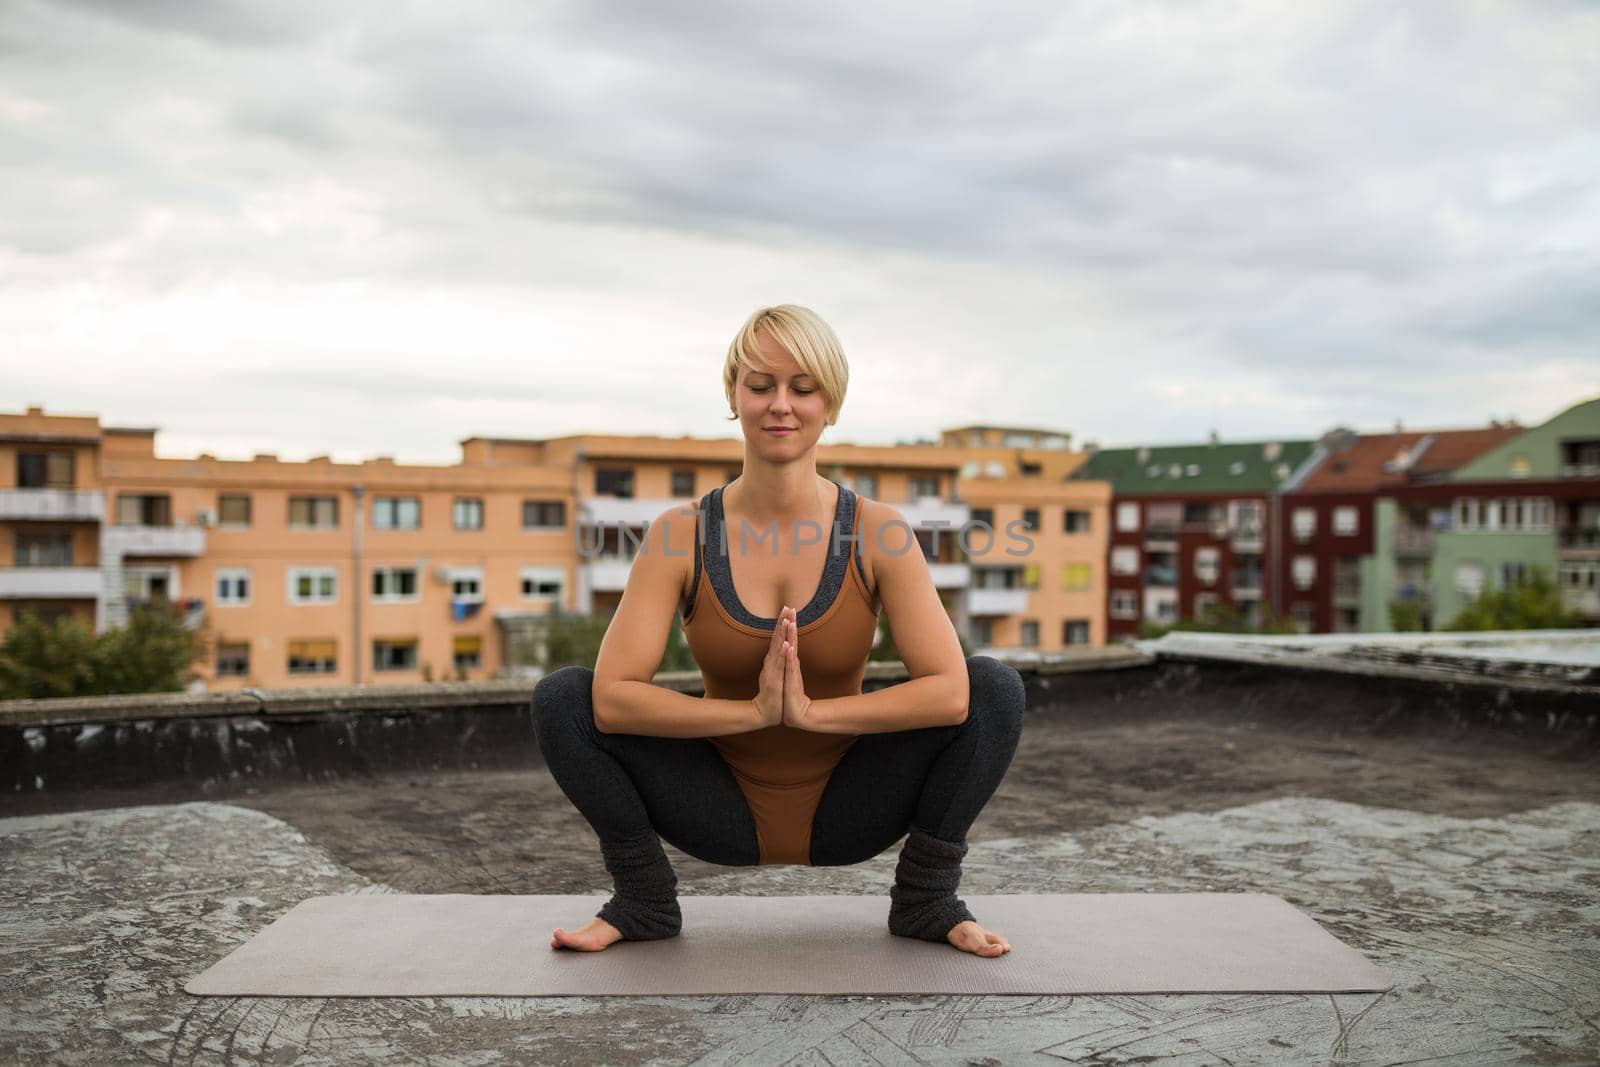 Woman enjoys practicing yoga on the roof, Utkatasana/Buddhist stupa pose